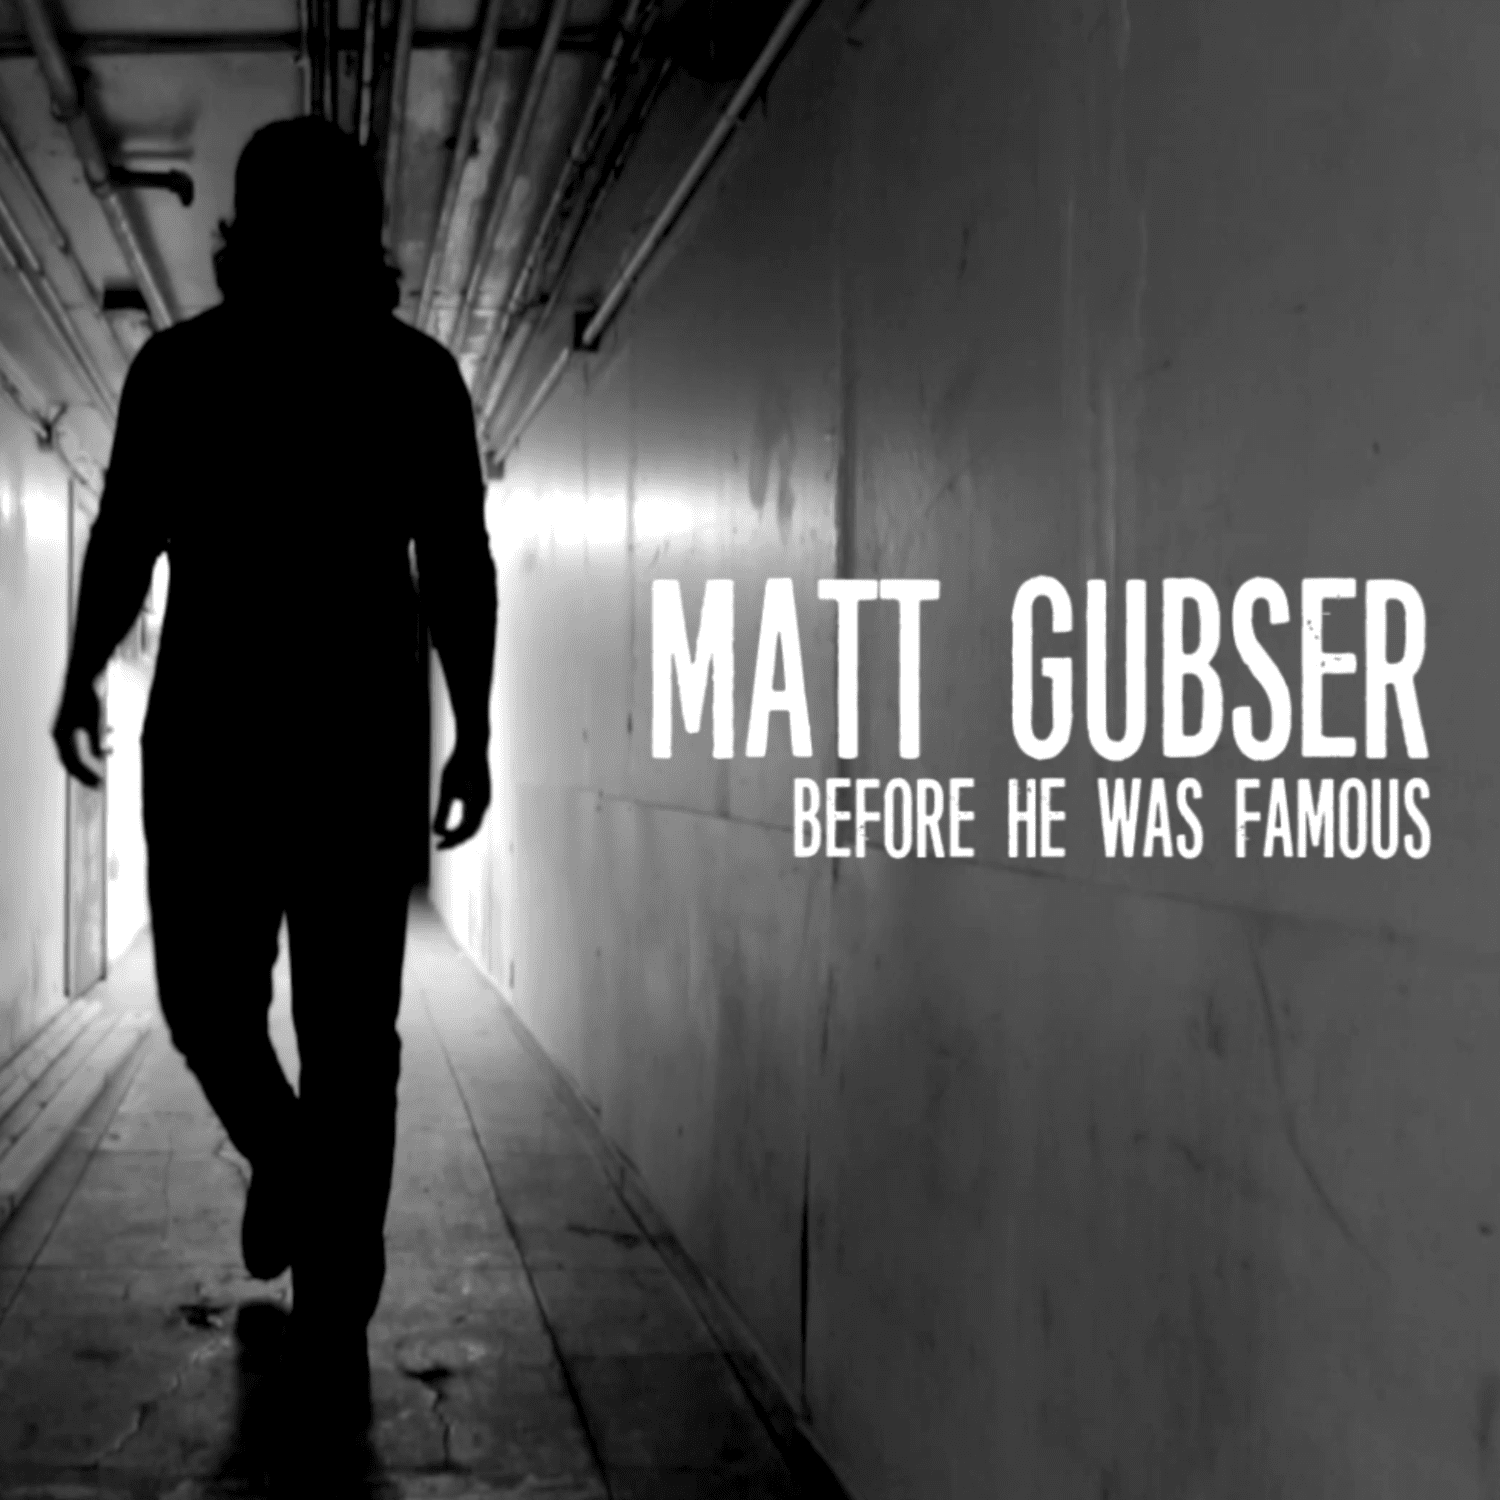 Matt Gubser